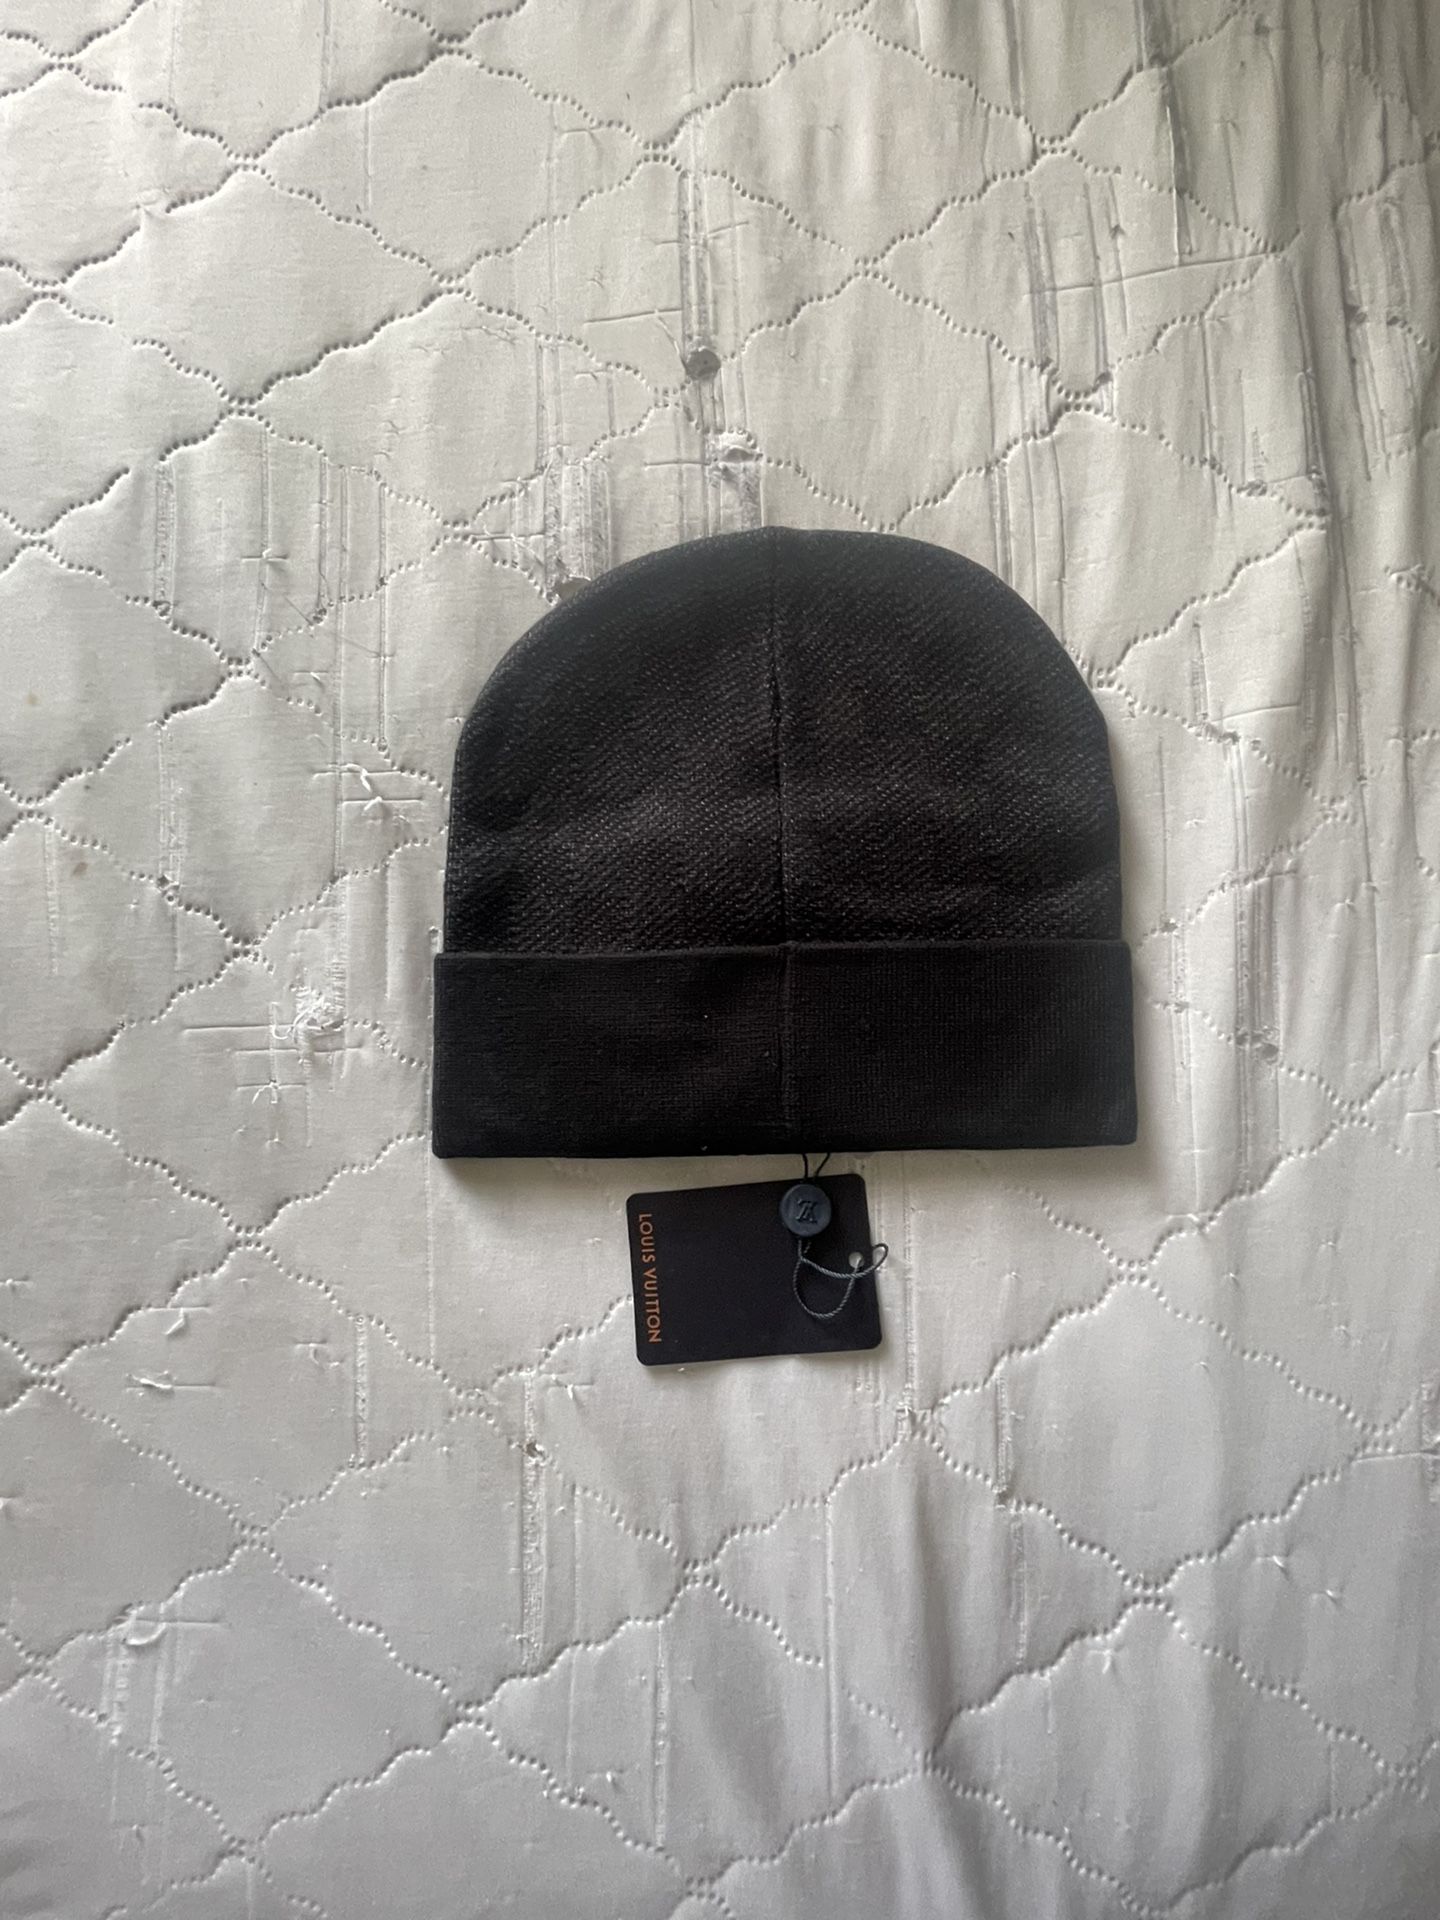 Louis Vuitton Petit Damier Hat - Black Hats, Accessories